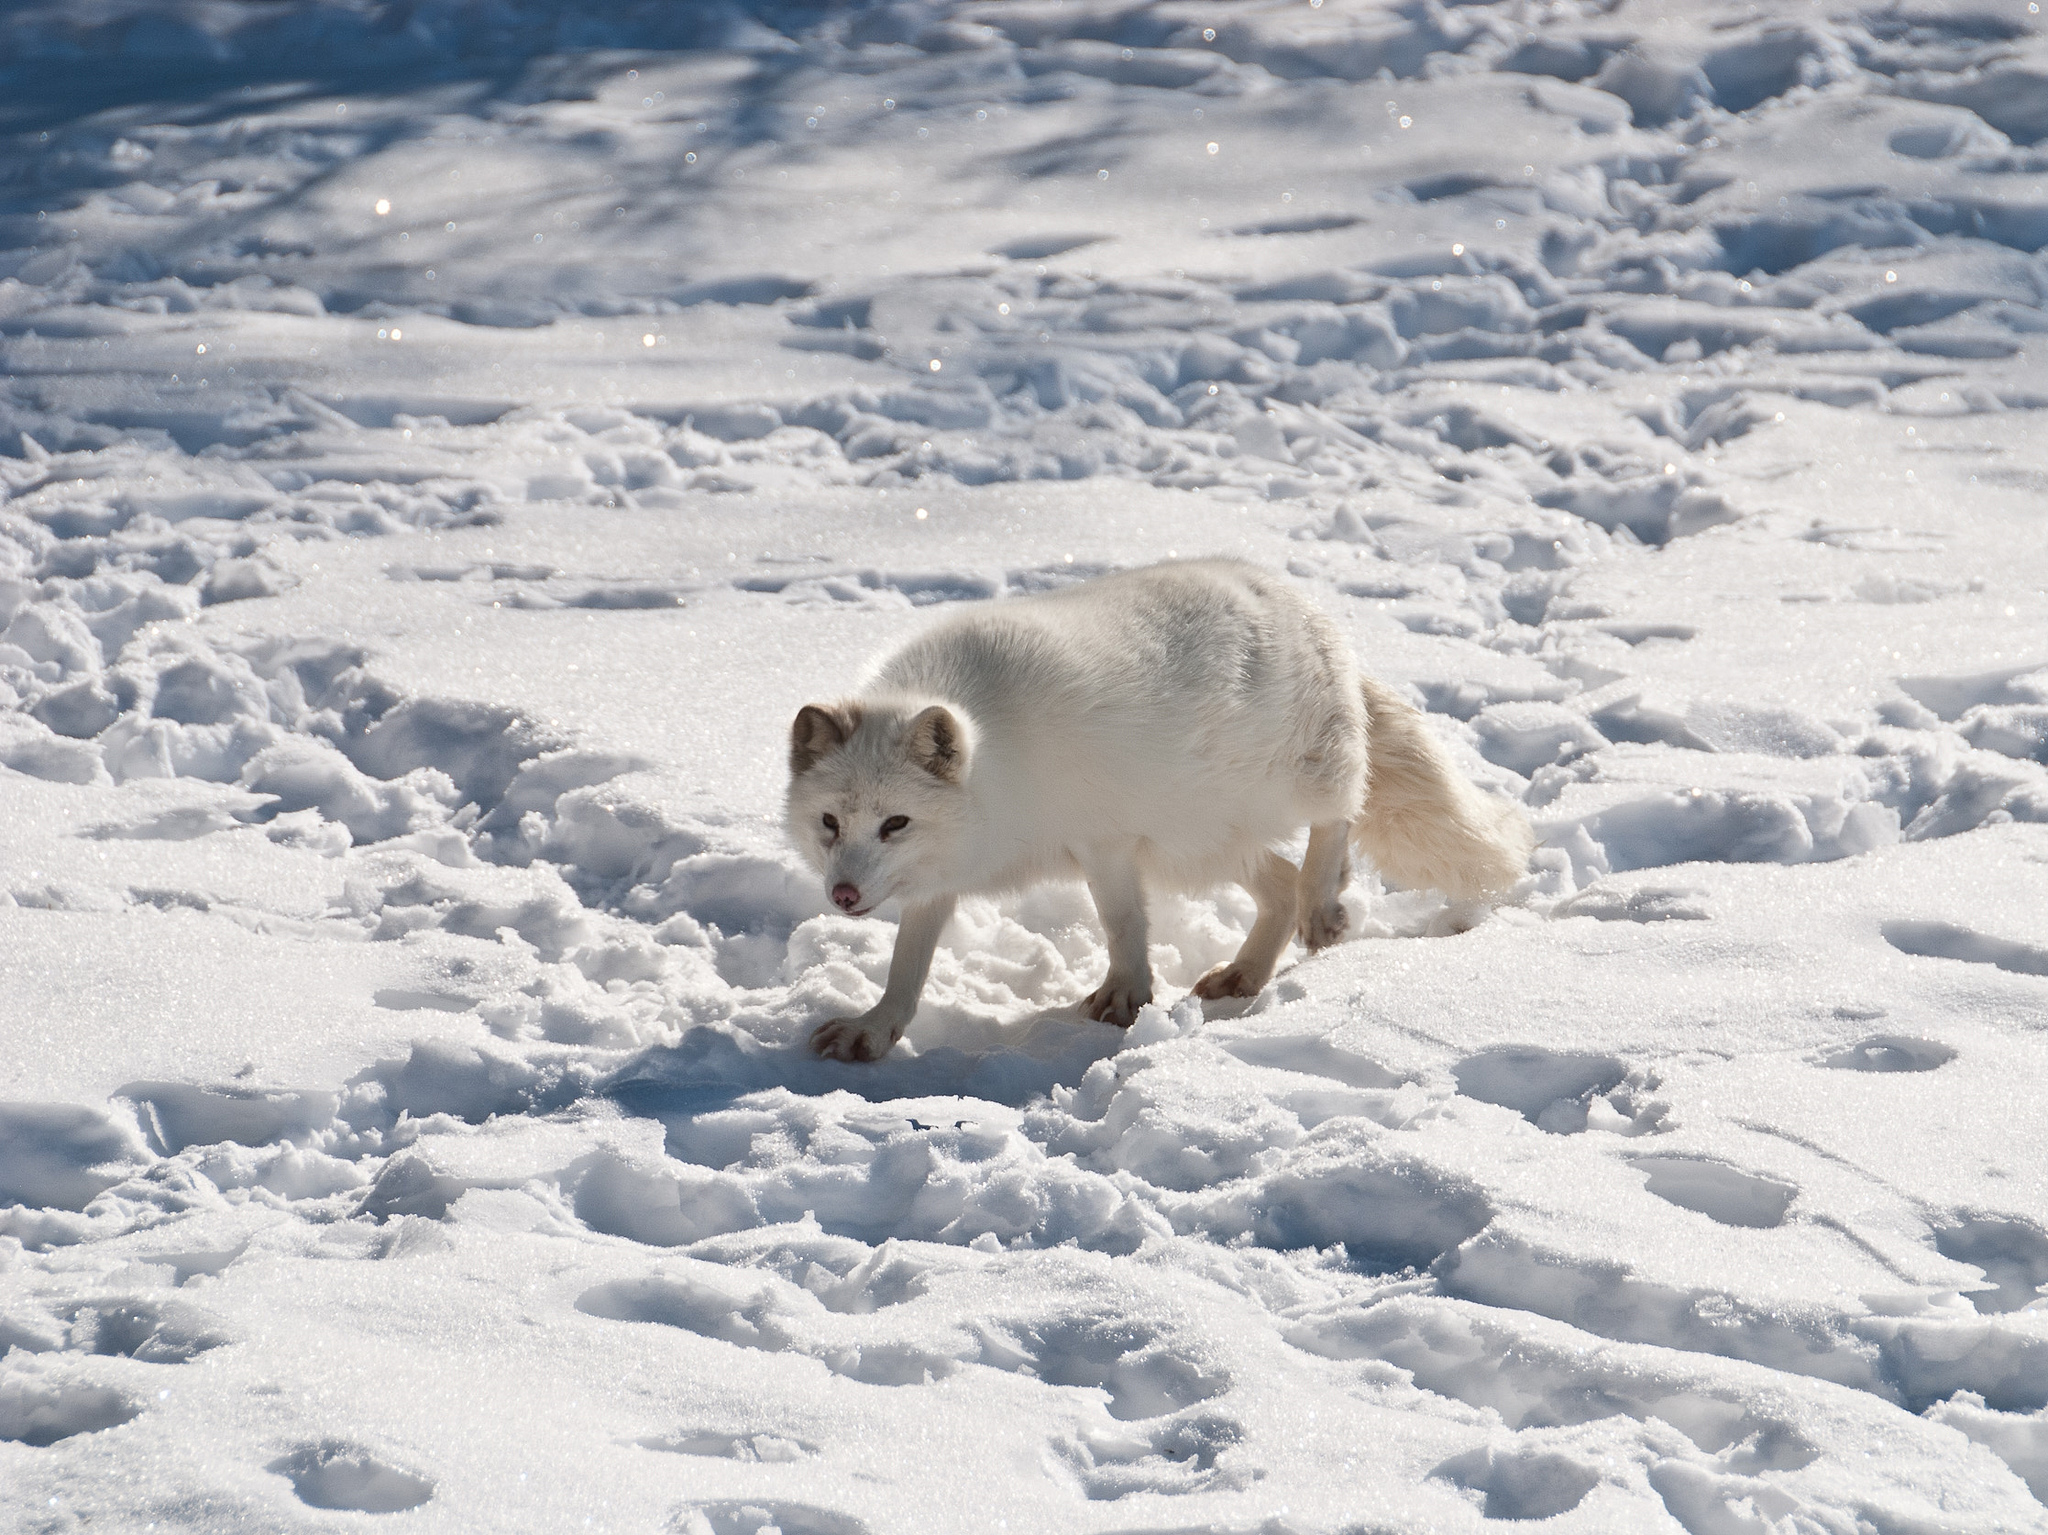 https://www.nps.gov/bela/learn/nature/images/Arctic-Fox.jpg